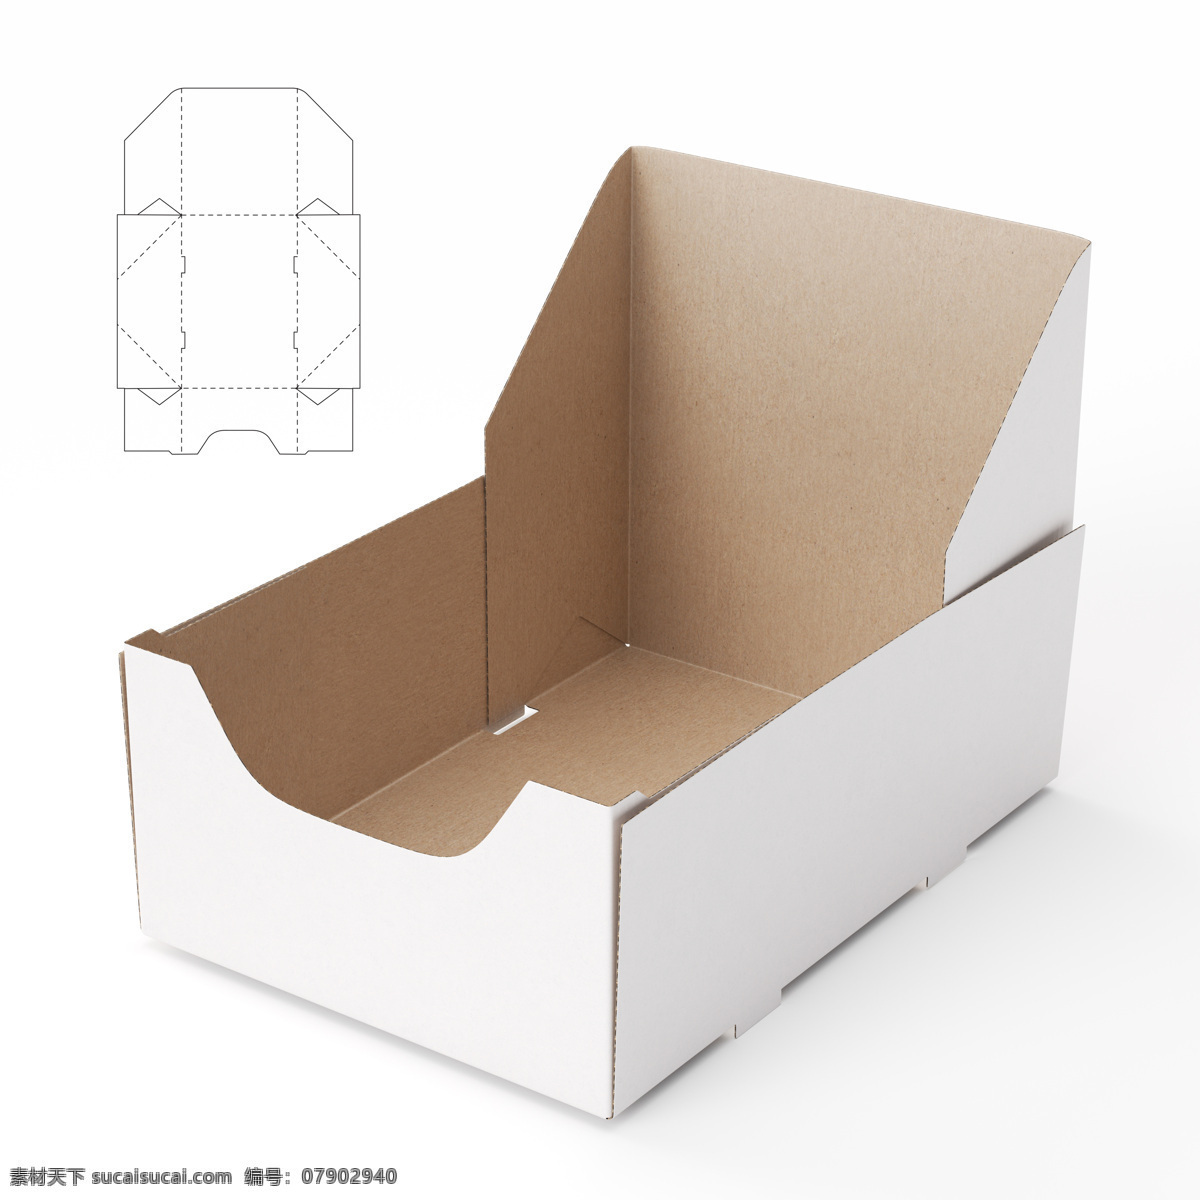 创意 产品 包装盒 纸盒设计 包装盒设计 包装盒展开图 包装平面图 钢刀线 包装设计 包装效果图 其他类别 生活百科 白色